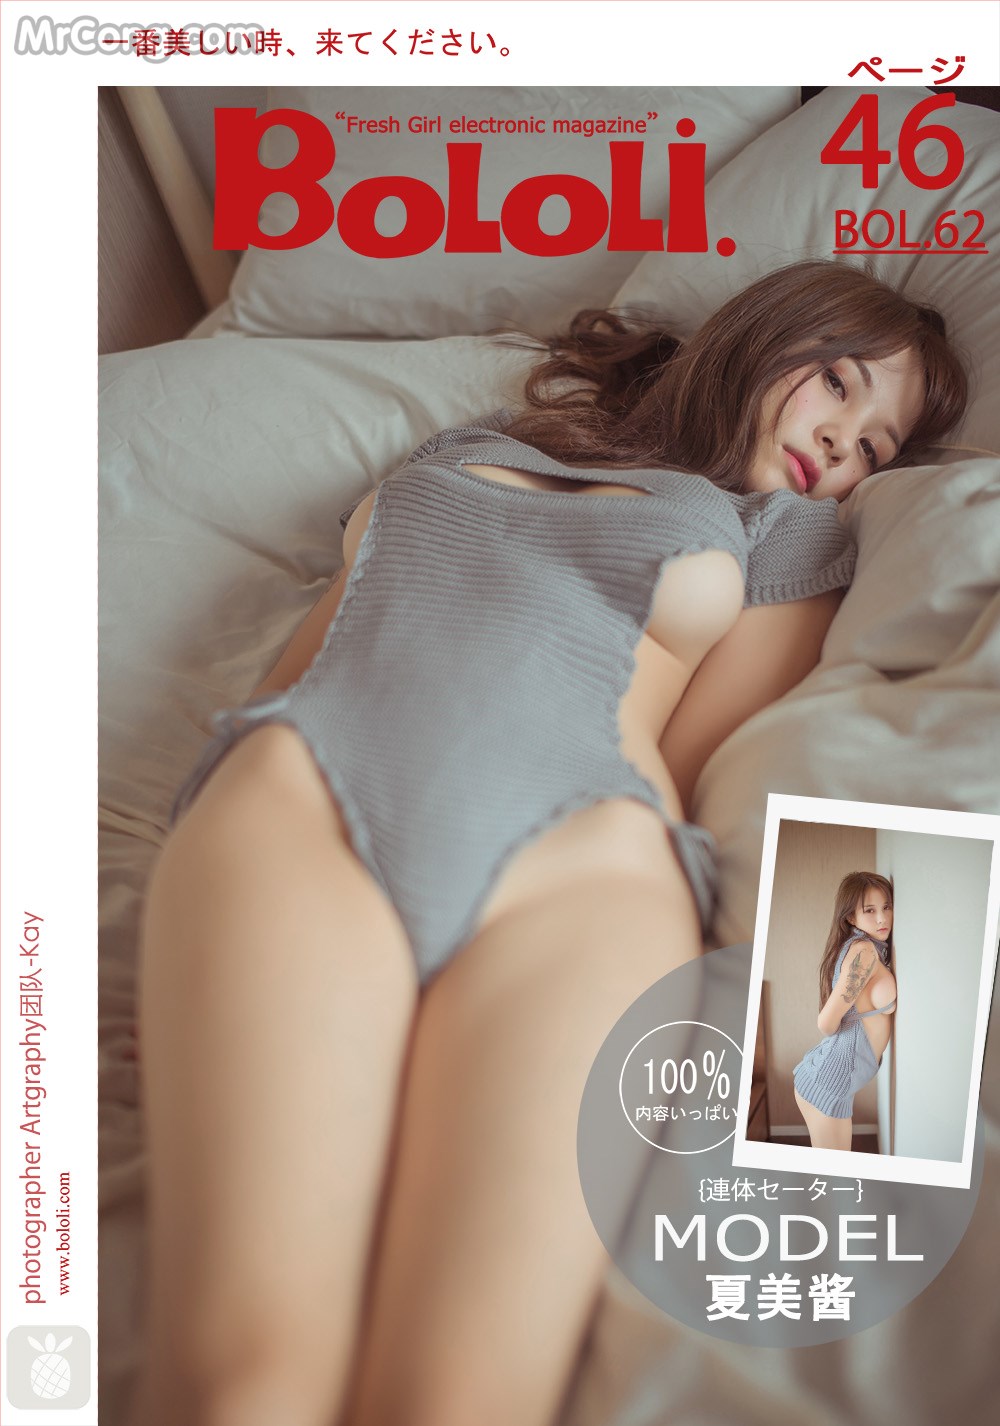 BoLoli 2017-05-24 Vol.062: Model Xia Mei Jiang (夏 美 酱) (47 photos) photo 1-0